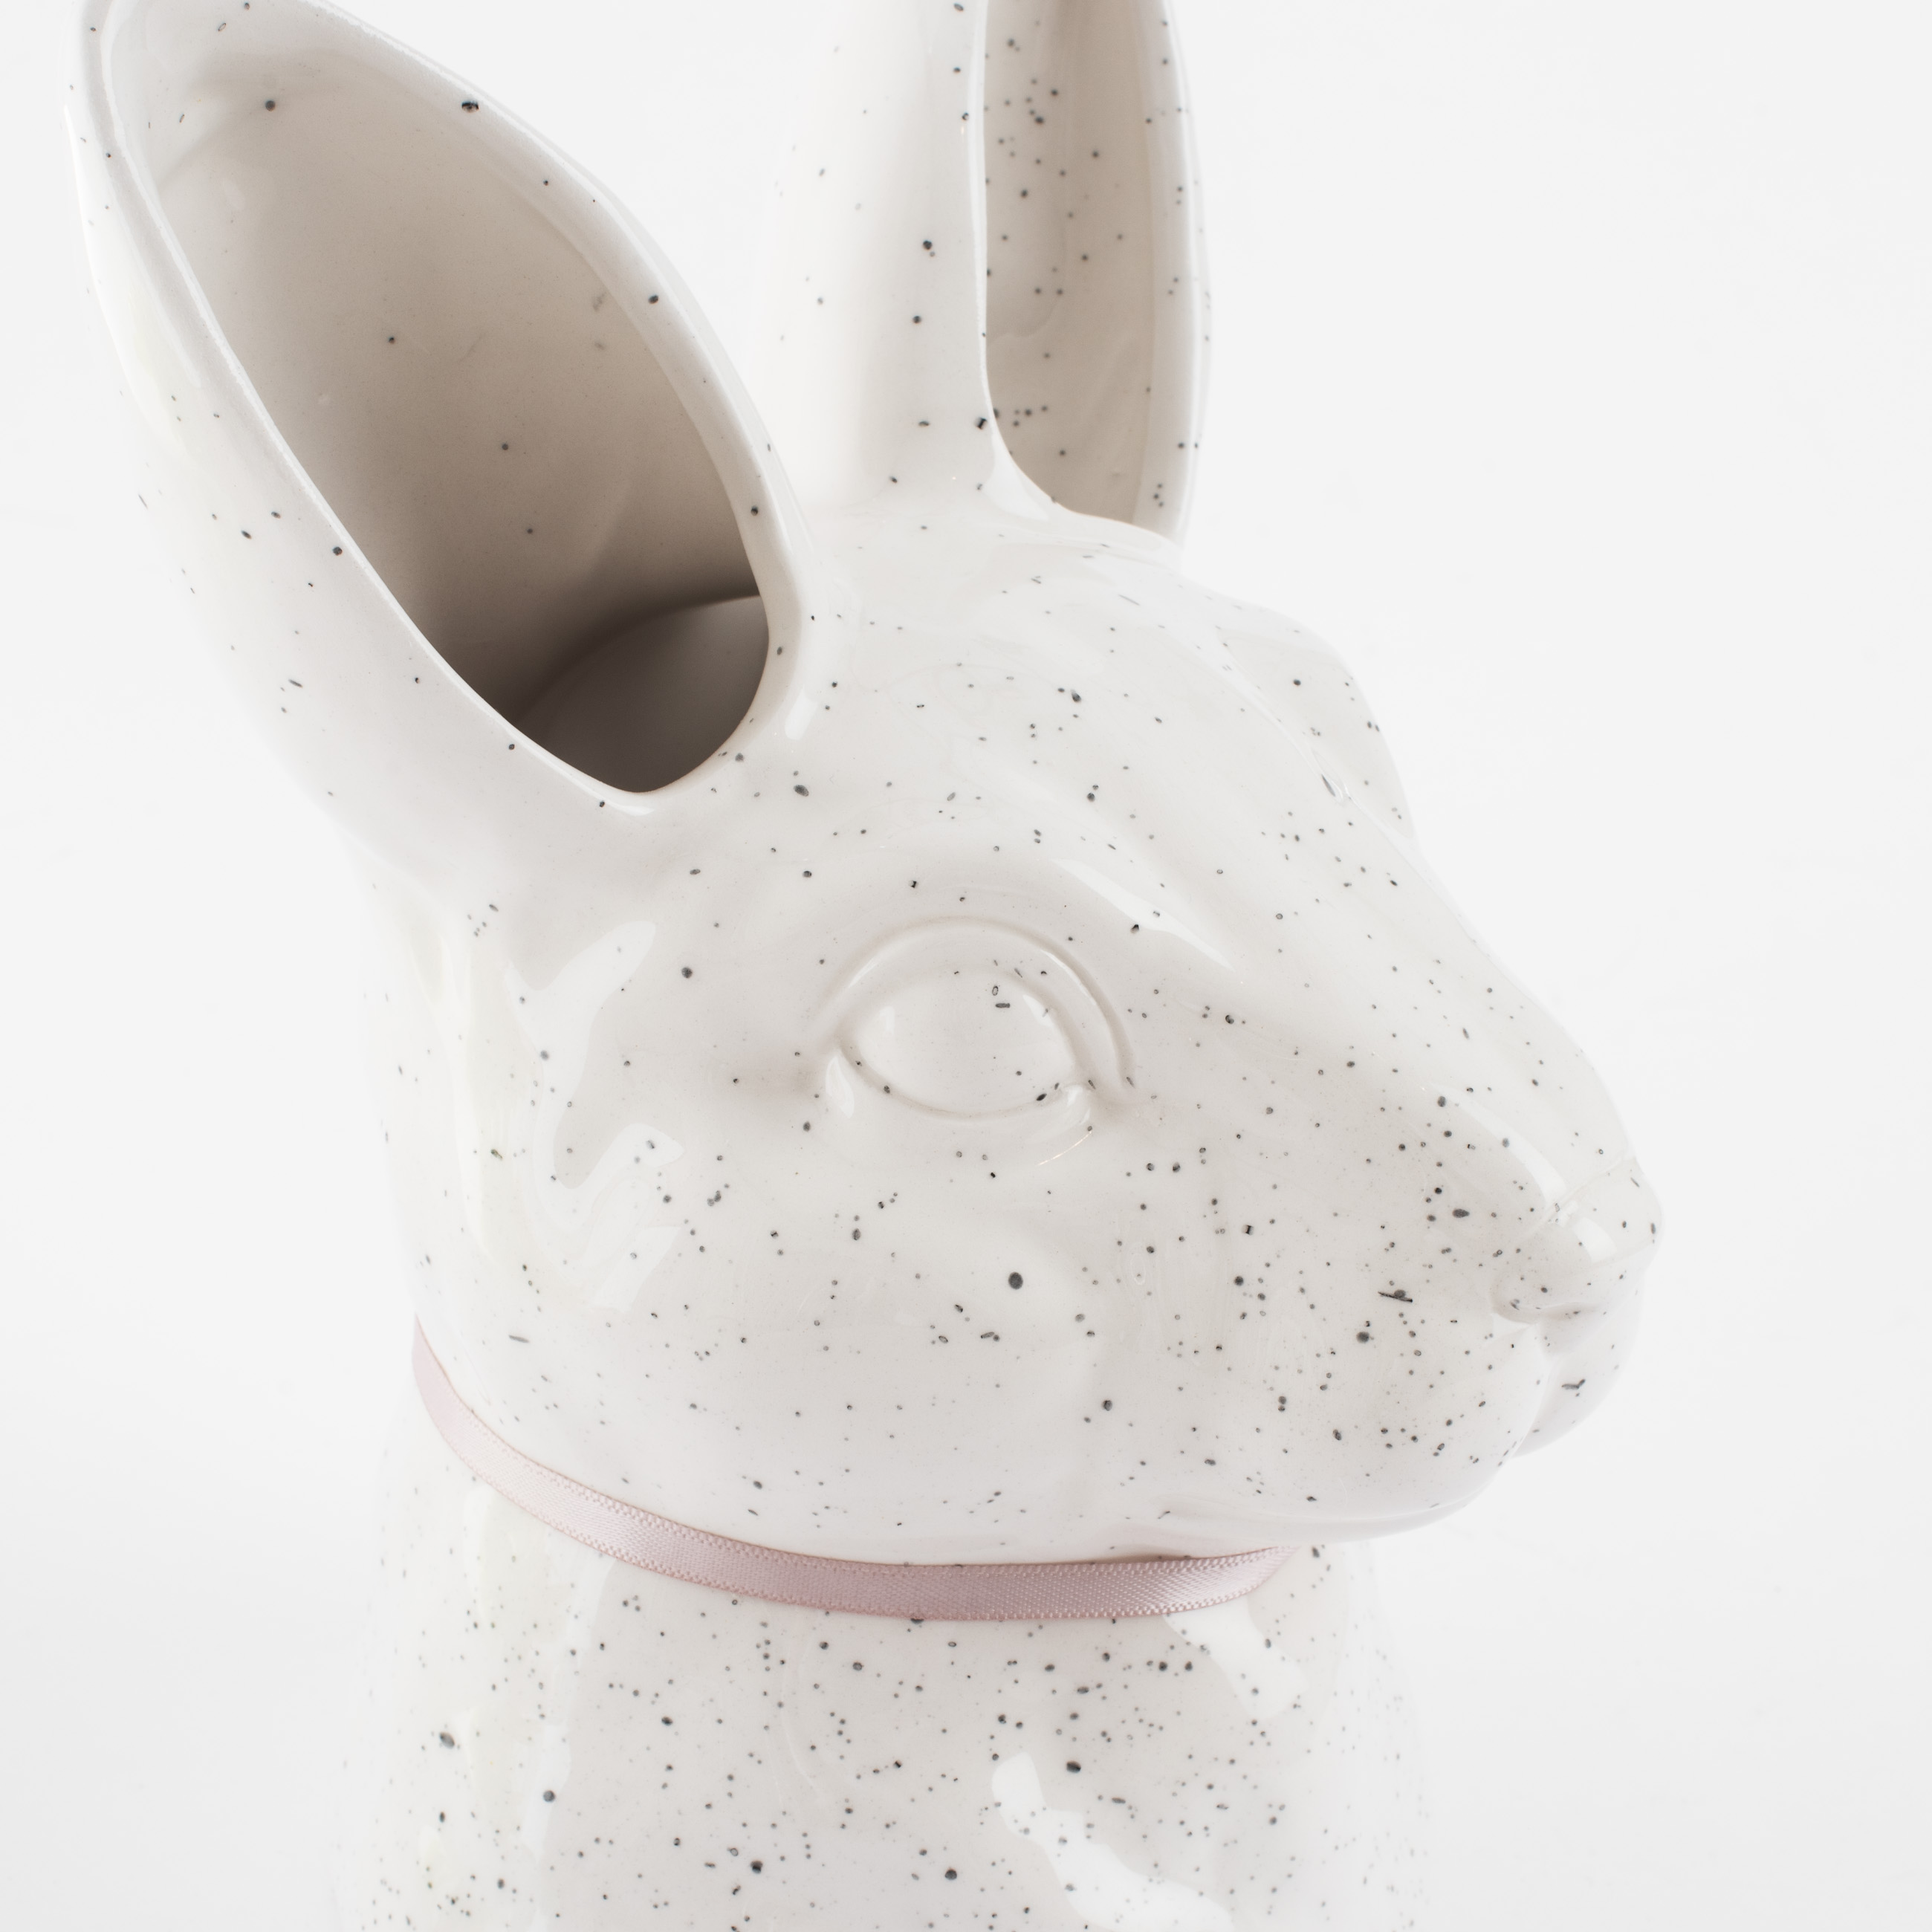 Ваза для цветов, 20 см, декоративная, керамика, молочная, в крапинку, Кролик, Natural Easter изображение № 5